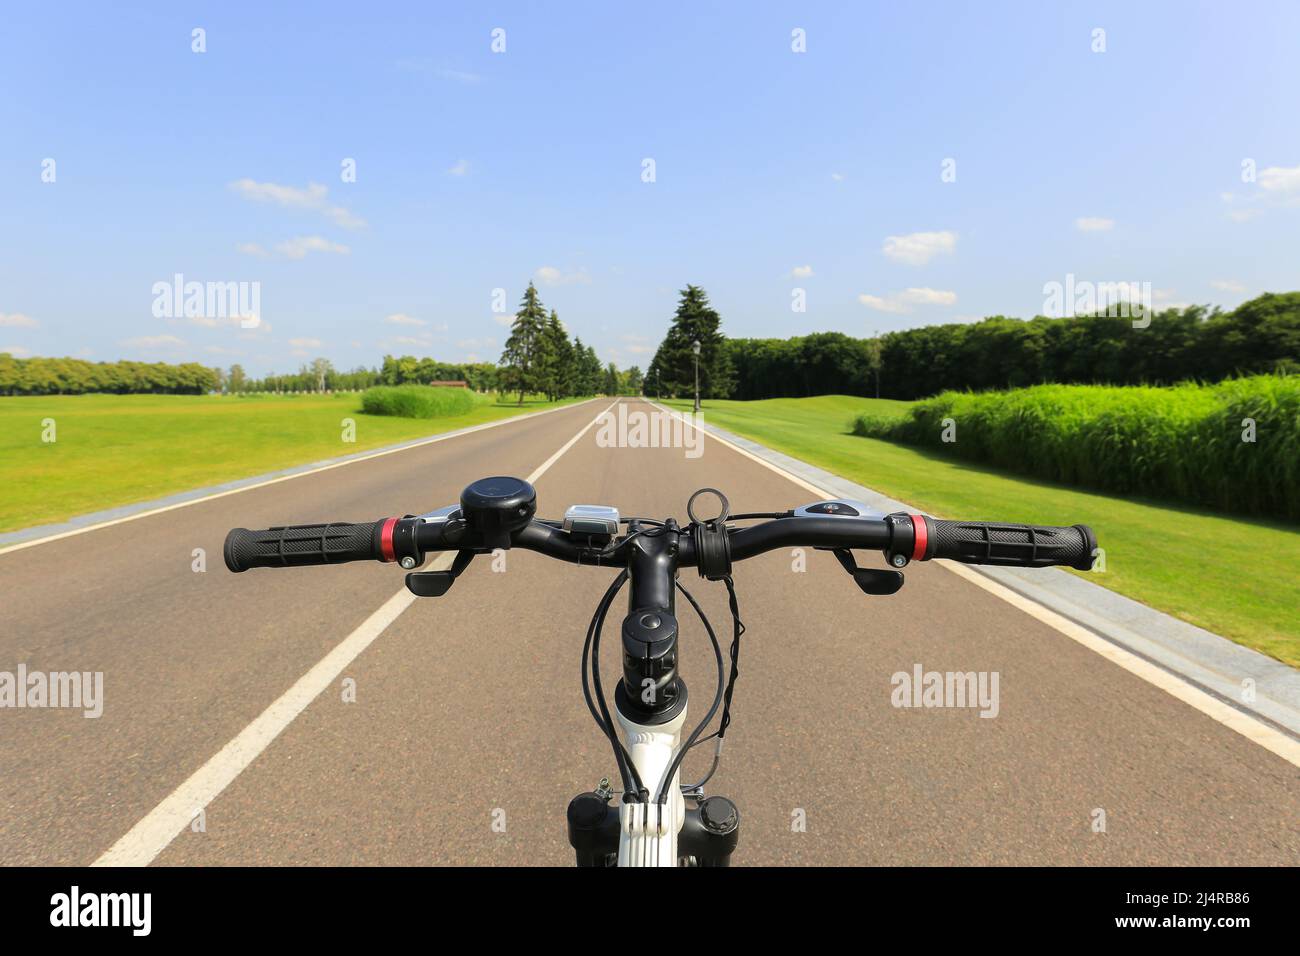 Bicicleta en la carretera, vista para primera persona Foto de stock